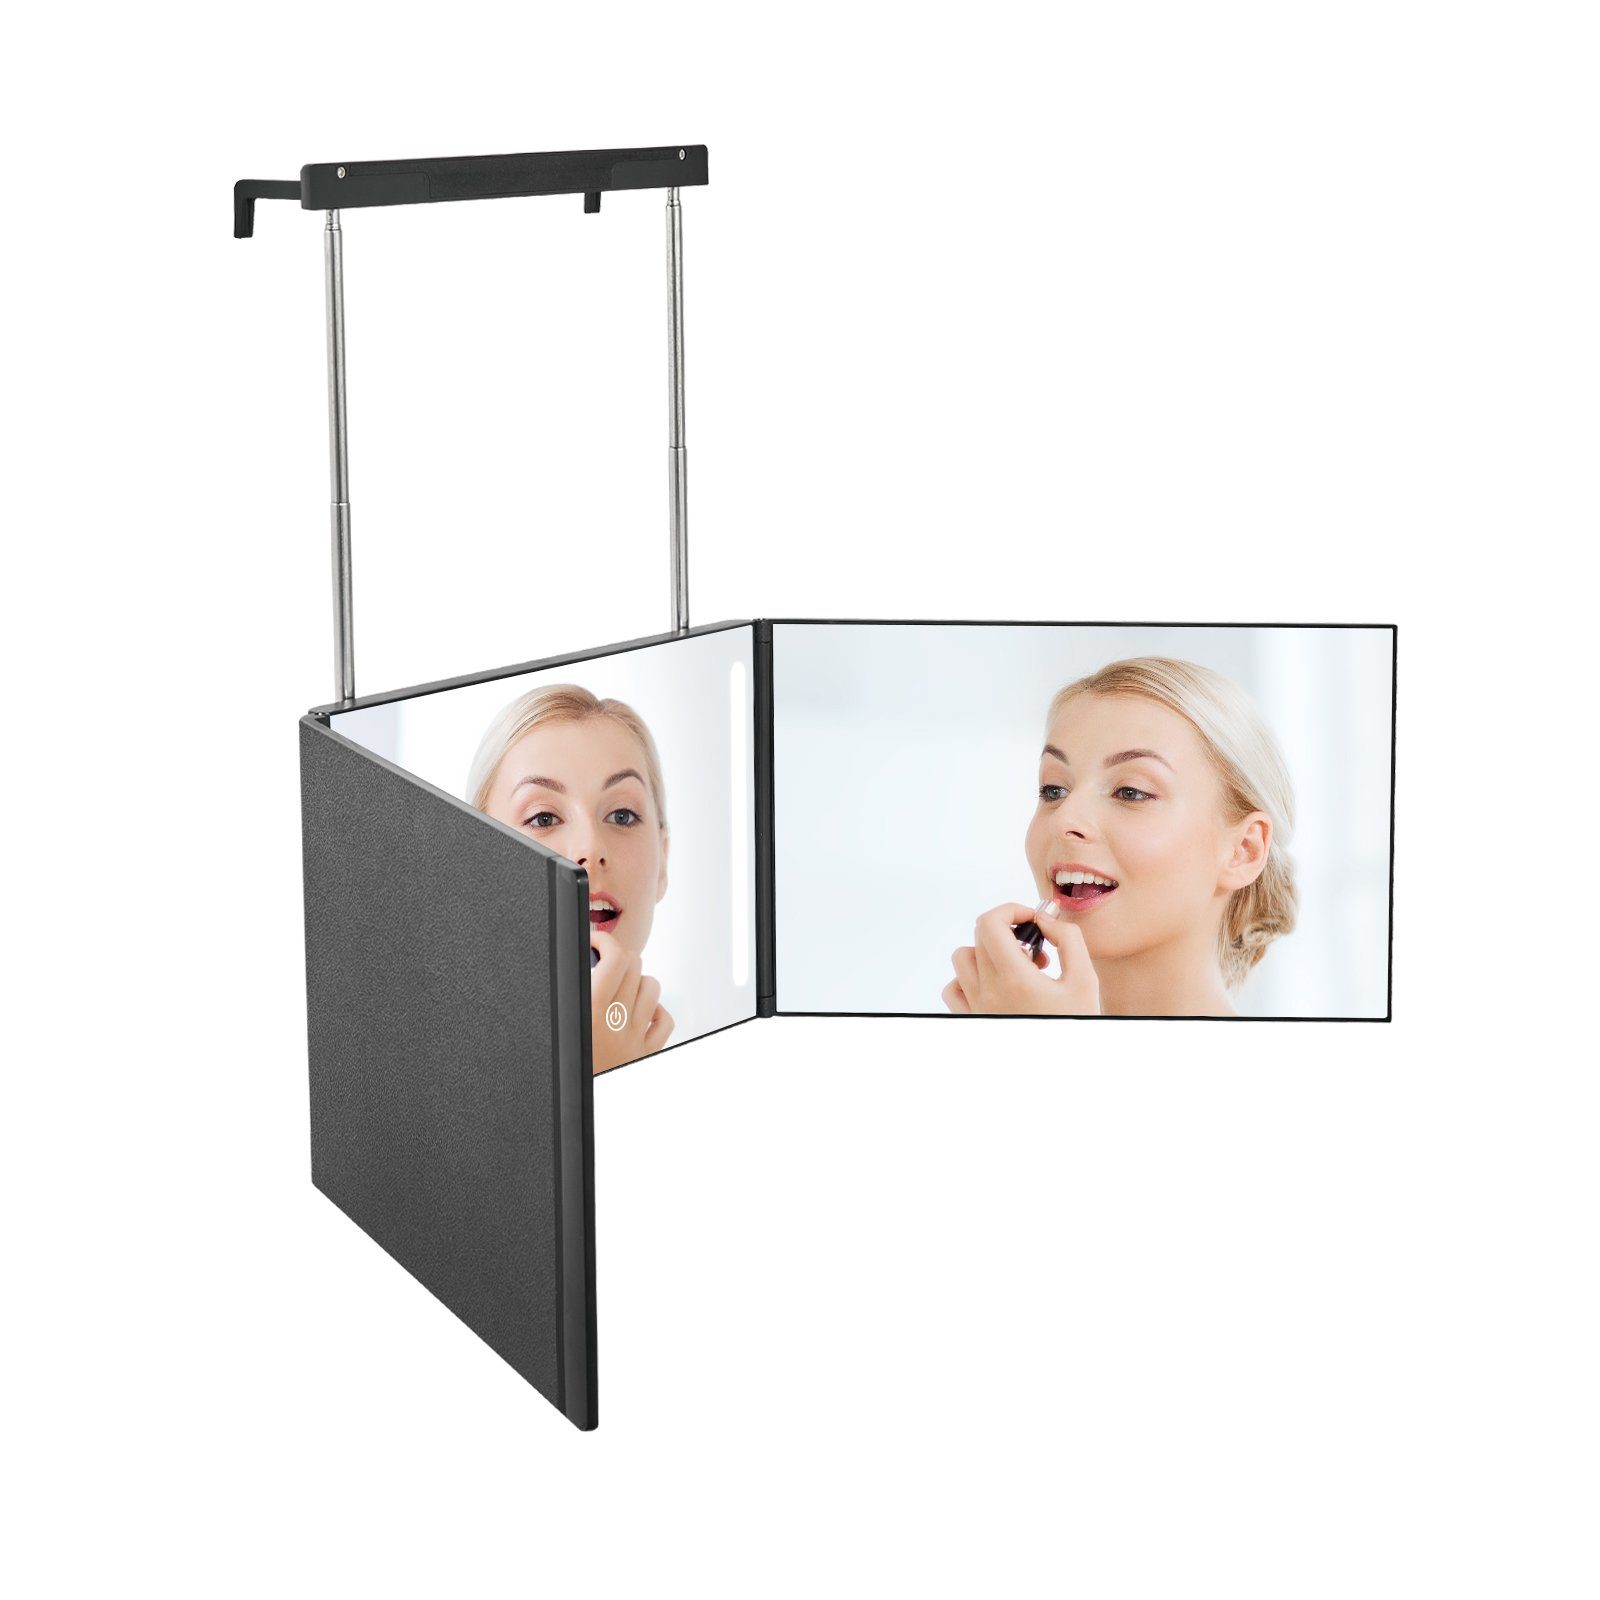 EMKE Kosmetikspiegel EMKE 360 Grad Spiegel Kosmetikspiegel Rasierspiegel mit Beleuchtung, mit 5X Vergrößerung Höhenverstellbaren für Make-up Schwarz